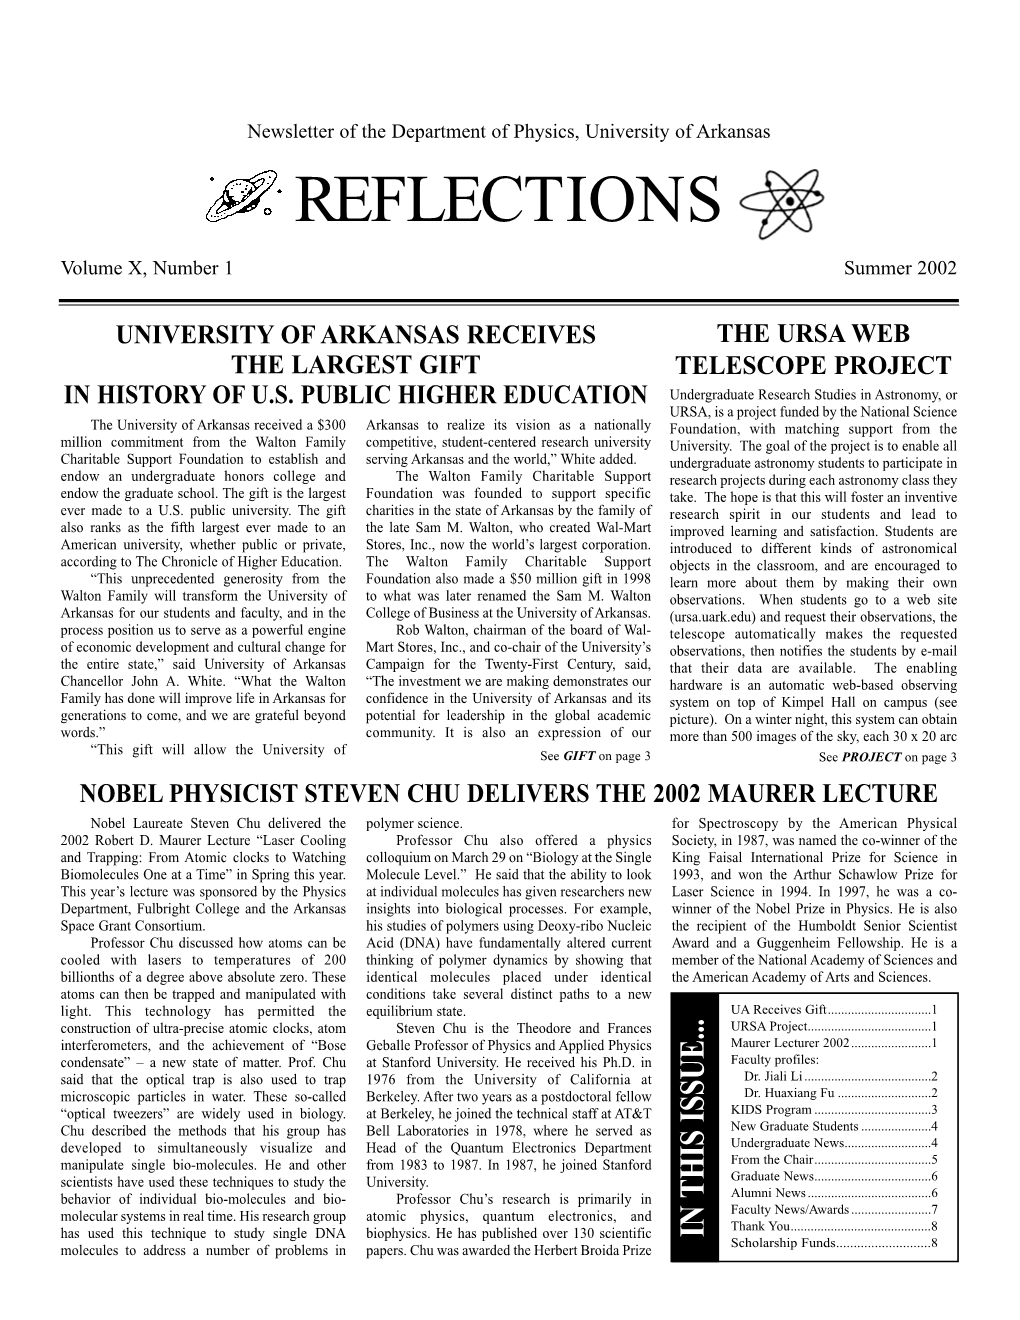 2002 Alumni Newsletter